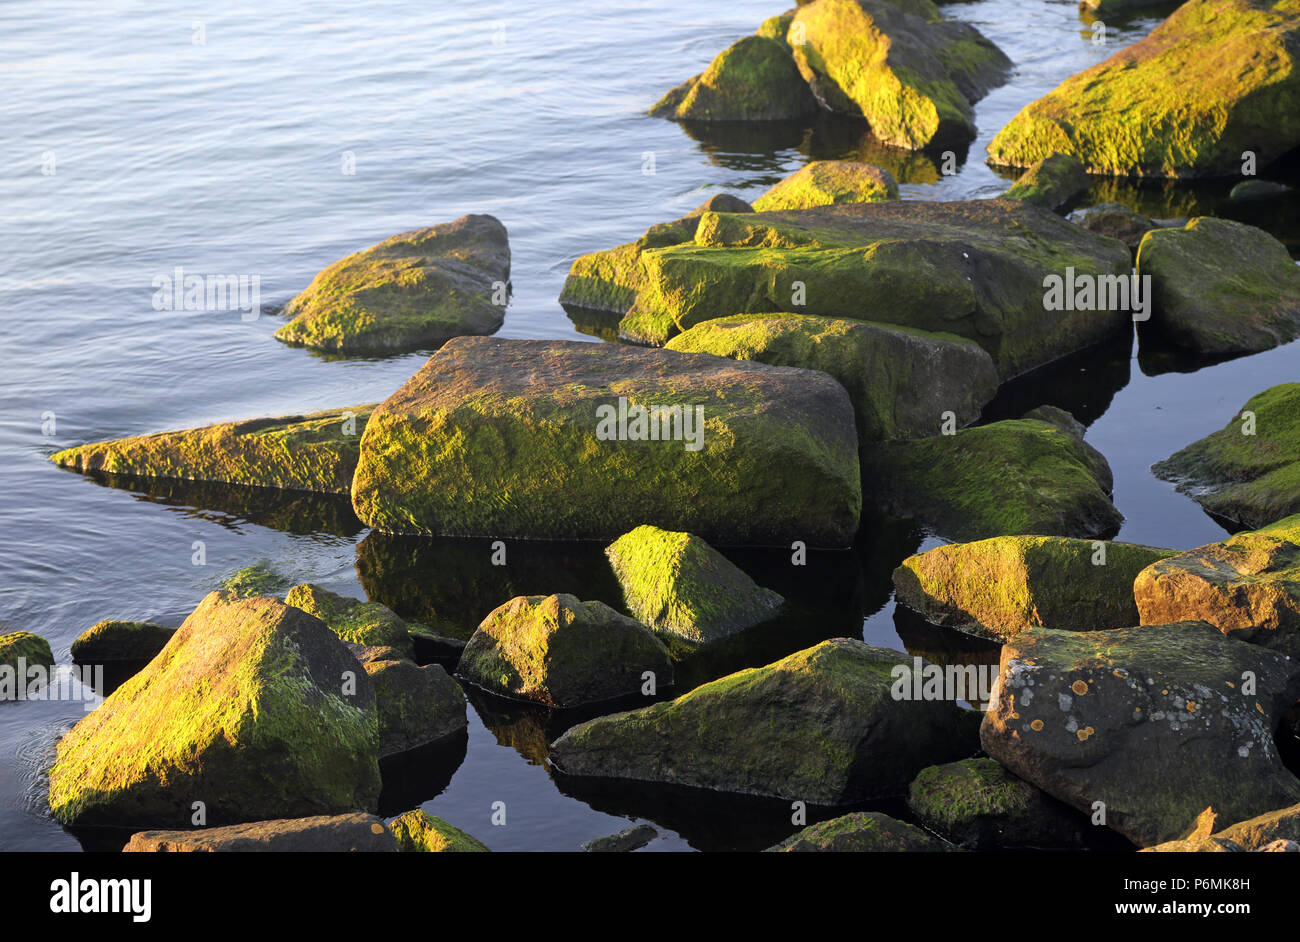 Warnemuende, rocce con alghe verdi in acqua Foto Stock